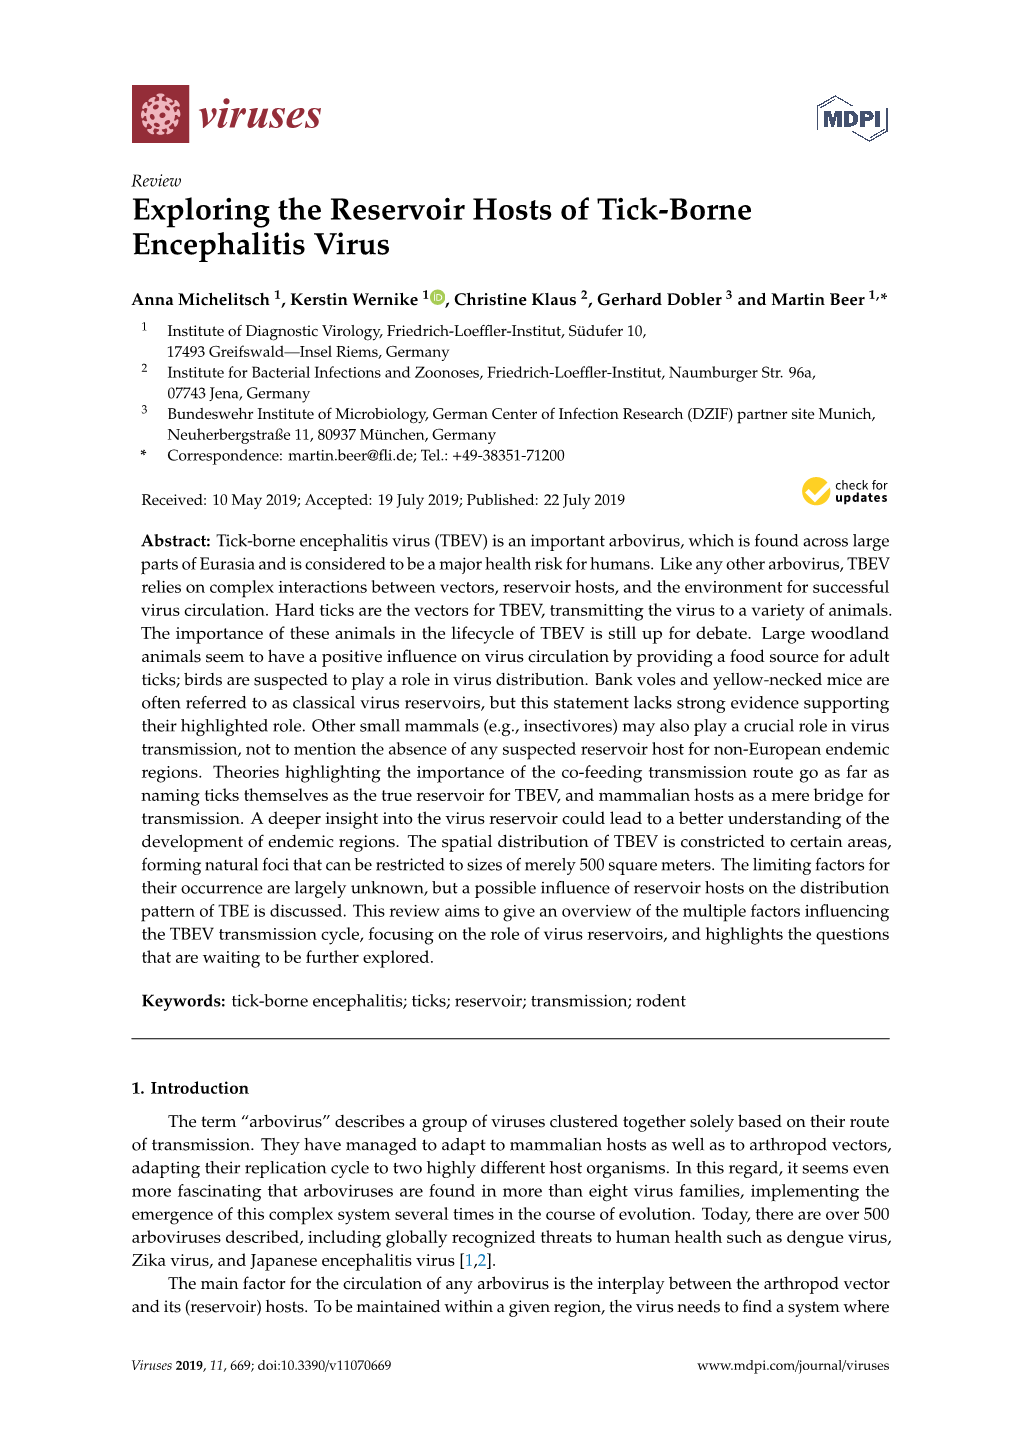 Exploring the Reservoir Hosts of Tick-Borne Encephalitis Virus